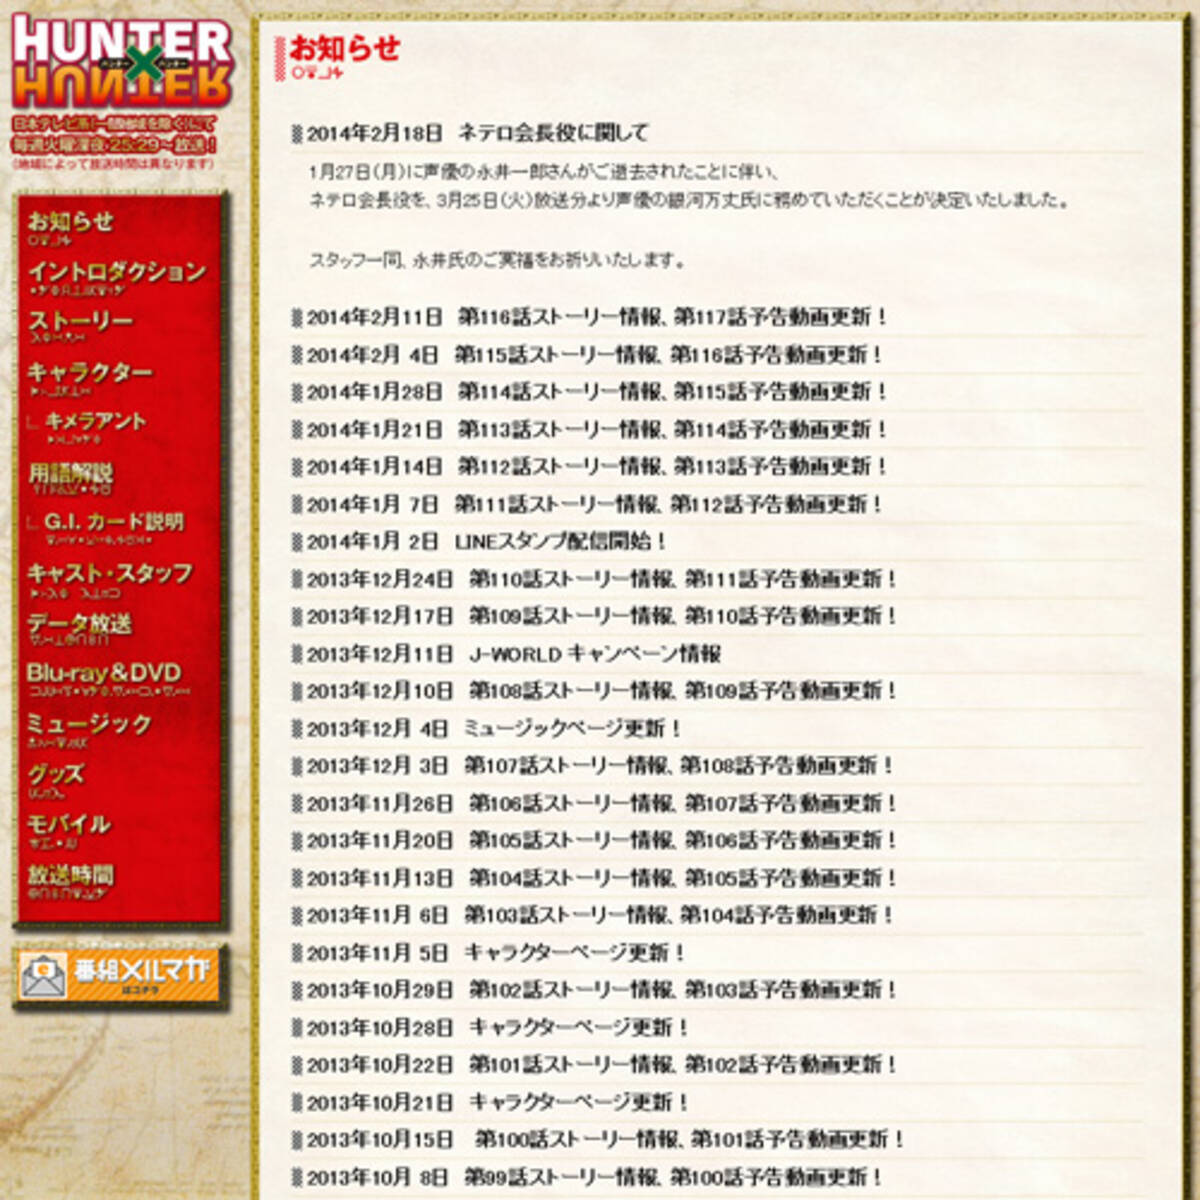 アニメ Hunter Hunter で永井一郎さんが演じていたネテロ会長役の後任に銀河万丈さん 14年2月18日 エキサイトニュース